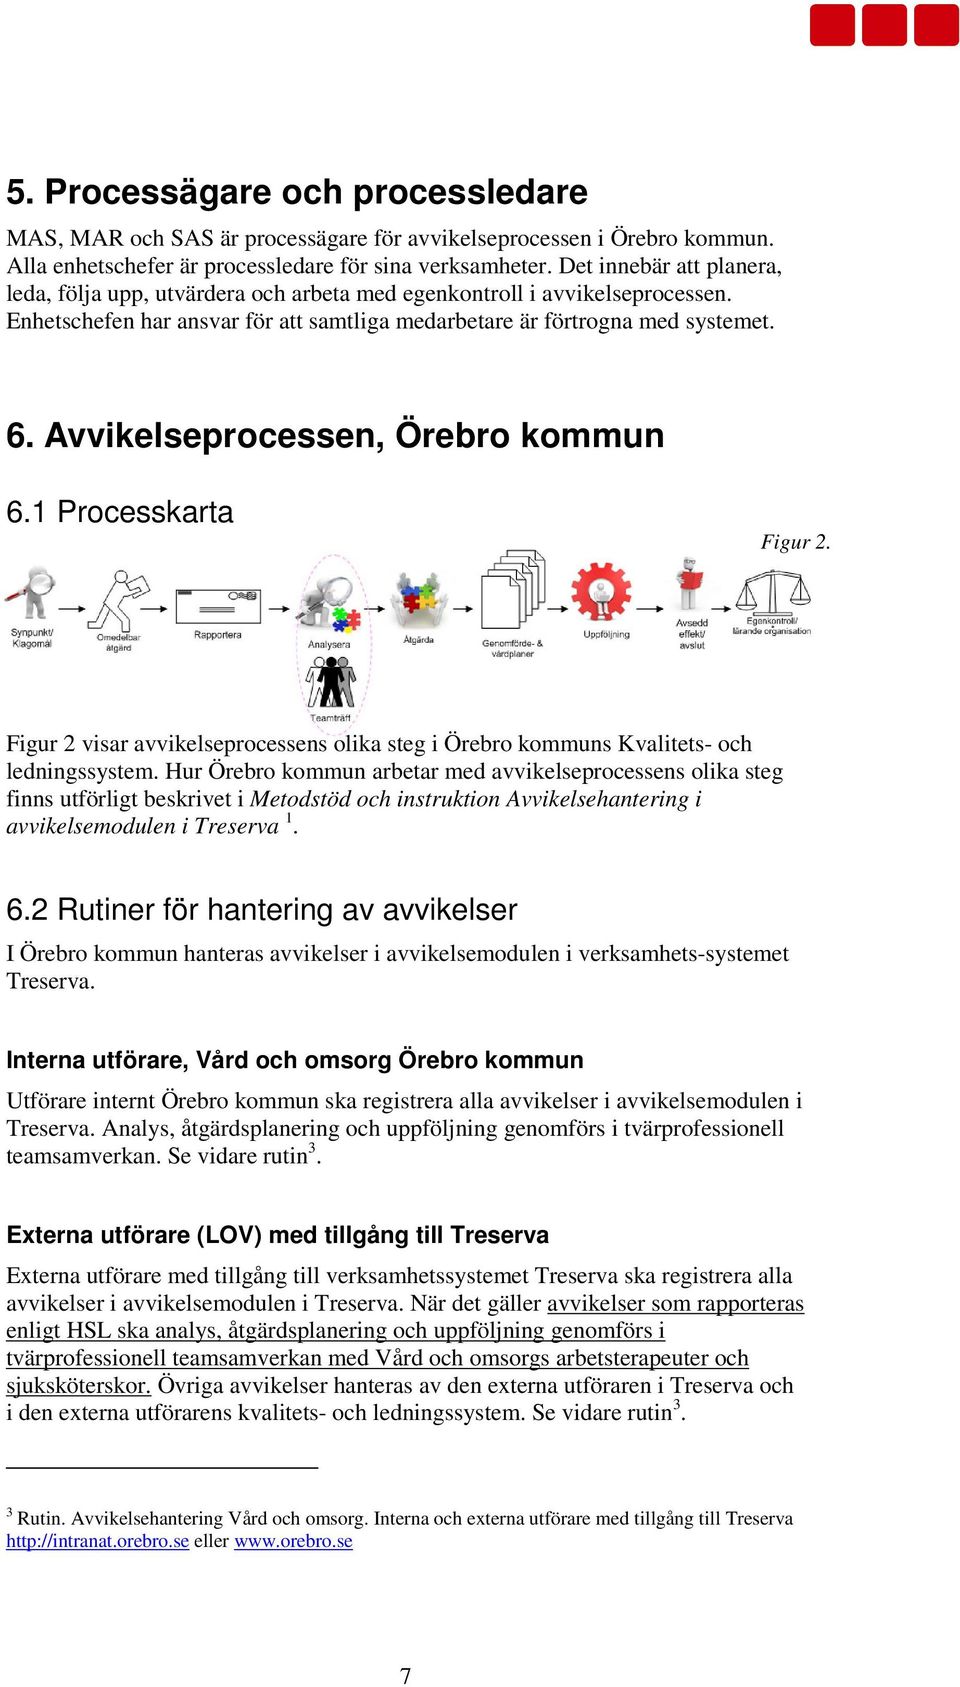 Avvikelseprocessen, Örebro kommun 6.1 Processkarta Figur 2. Figur 2 visar avvikelseprocessens olika steg i Örebro kommuns Kvalitets- och ledningssystem.